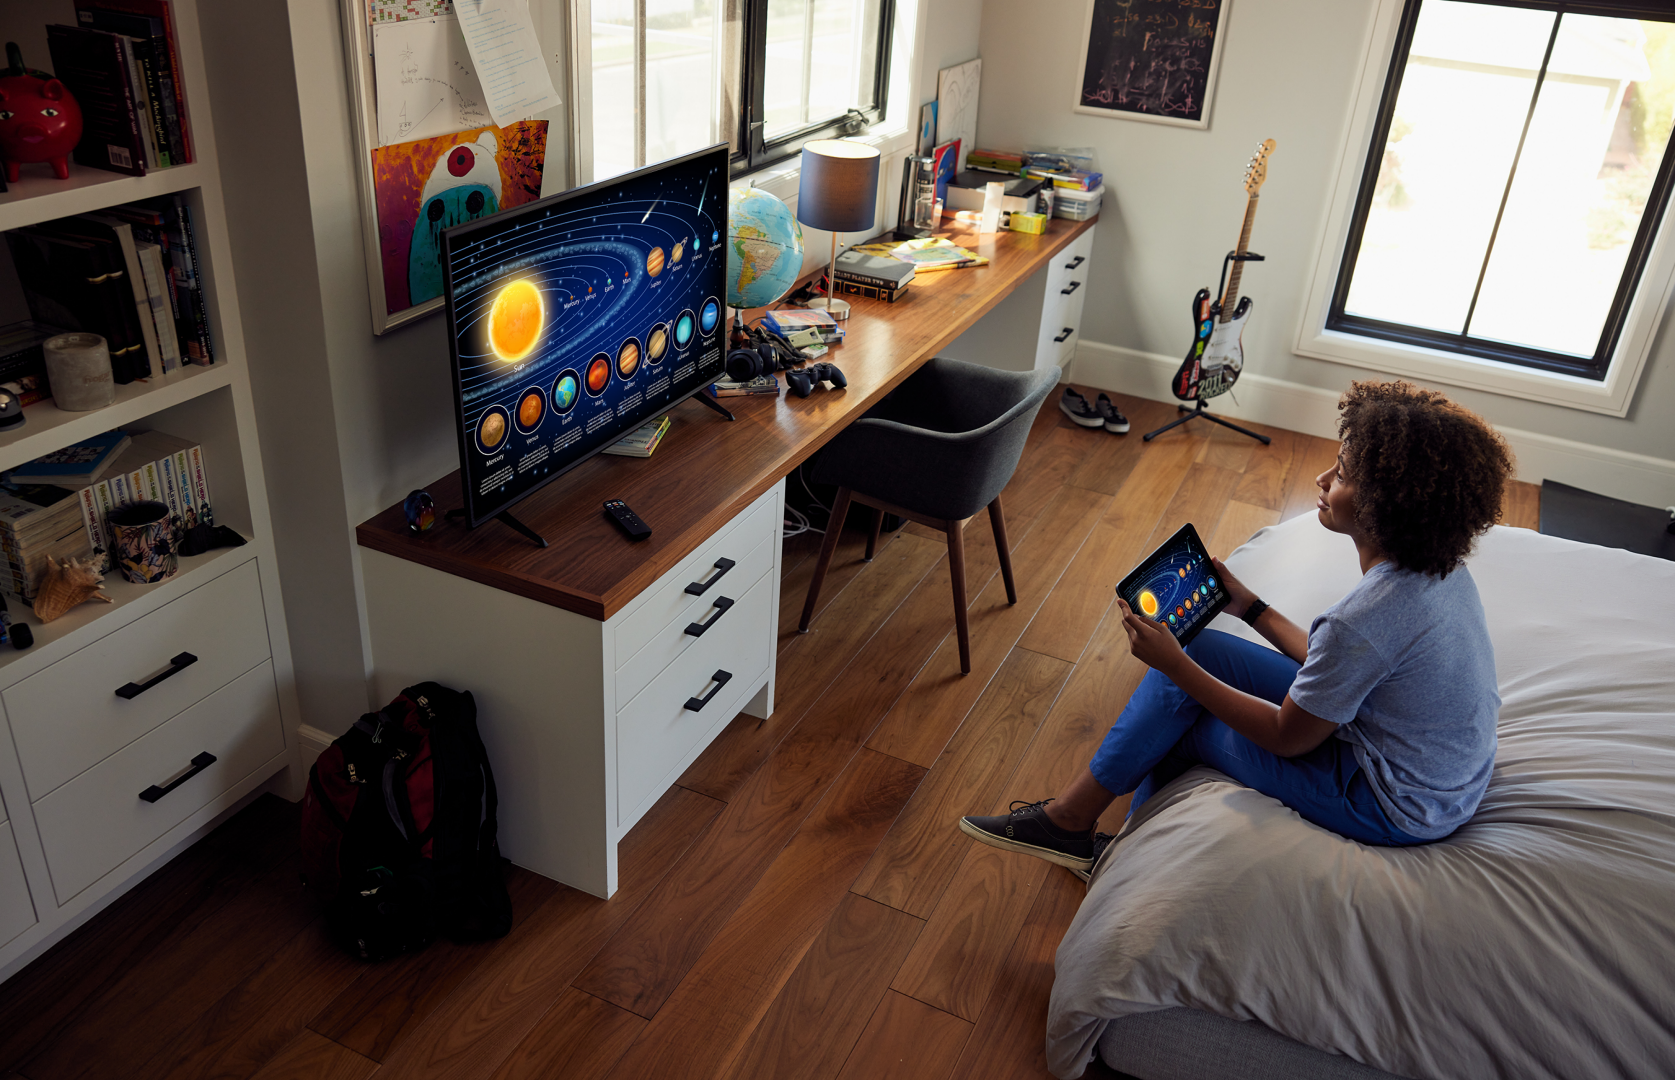  VIZIO - Smart TV Full HD 1080p de 40 pulgadas con Apple AirPlay  y Chromecast integrados, compatibilidad con Alexa, D40f-J09, modelo 2022 :  Electrónica